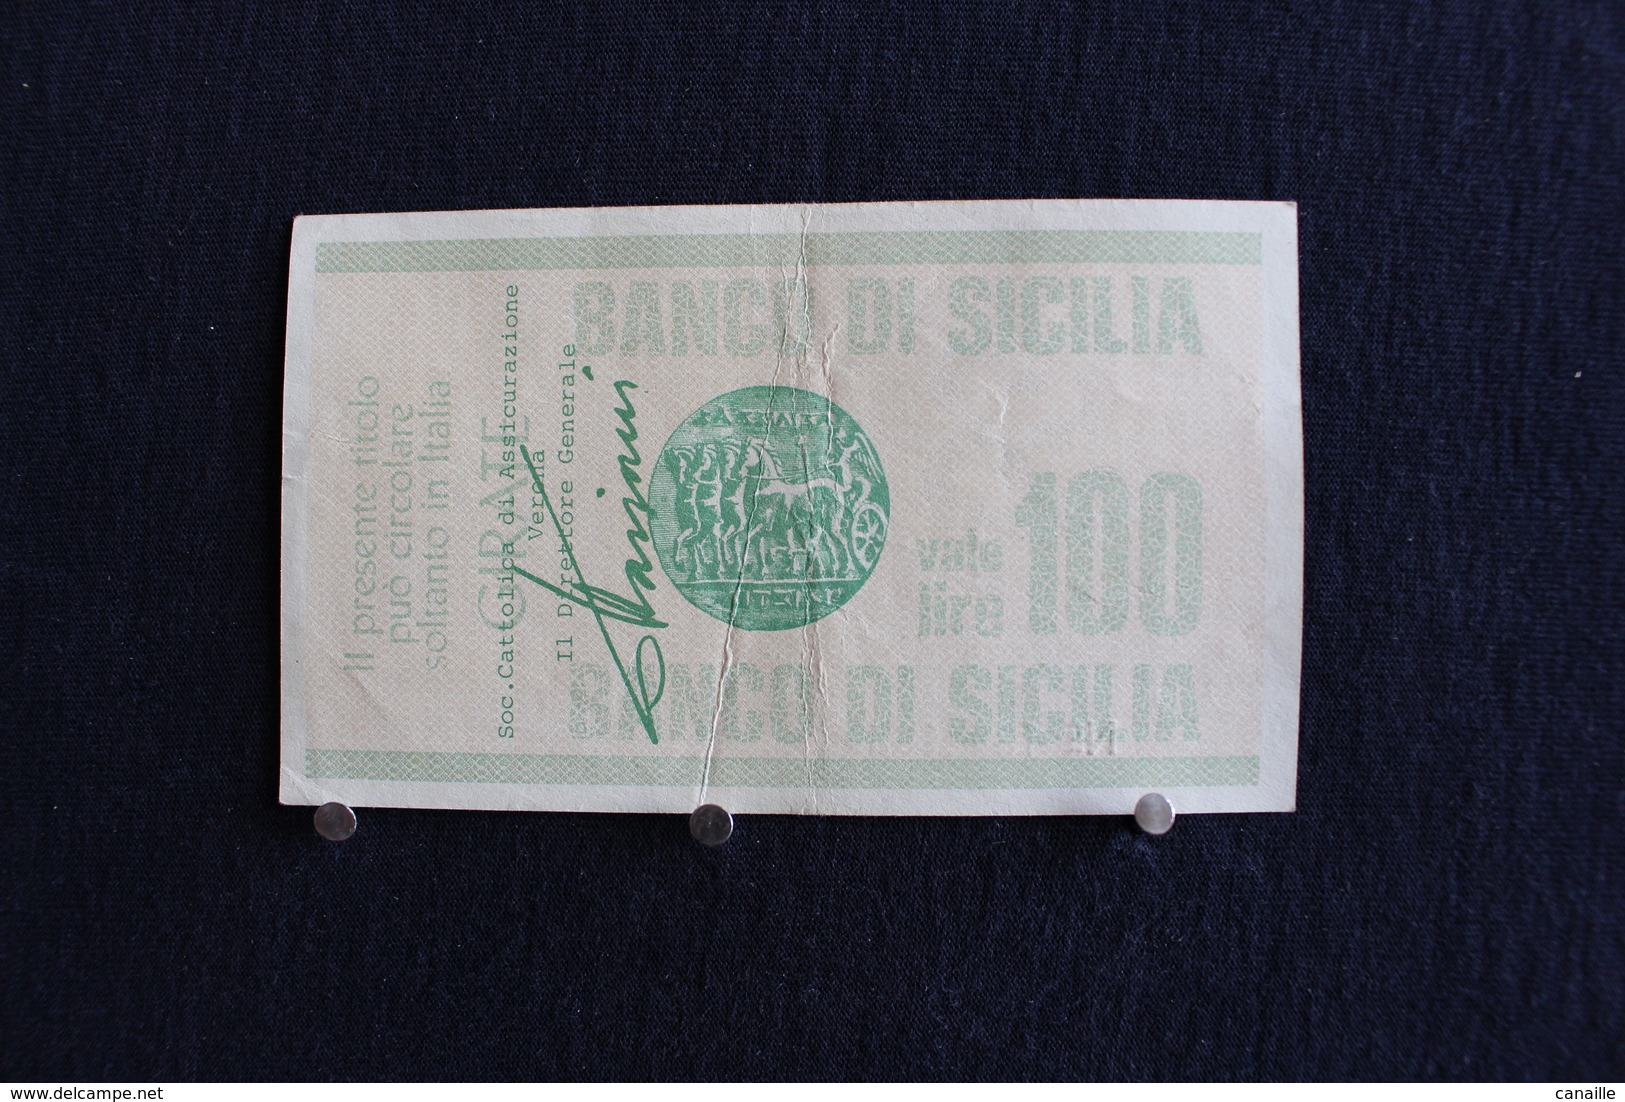 3 / Italie - 1946 : Royaume / Biglietti - Il Banco Di Sicilia, 25.10.1976 - 100 Lire - Cento Lire - - 100 Liras